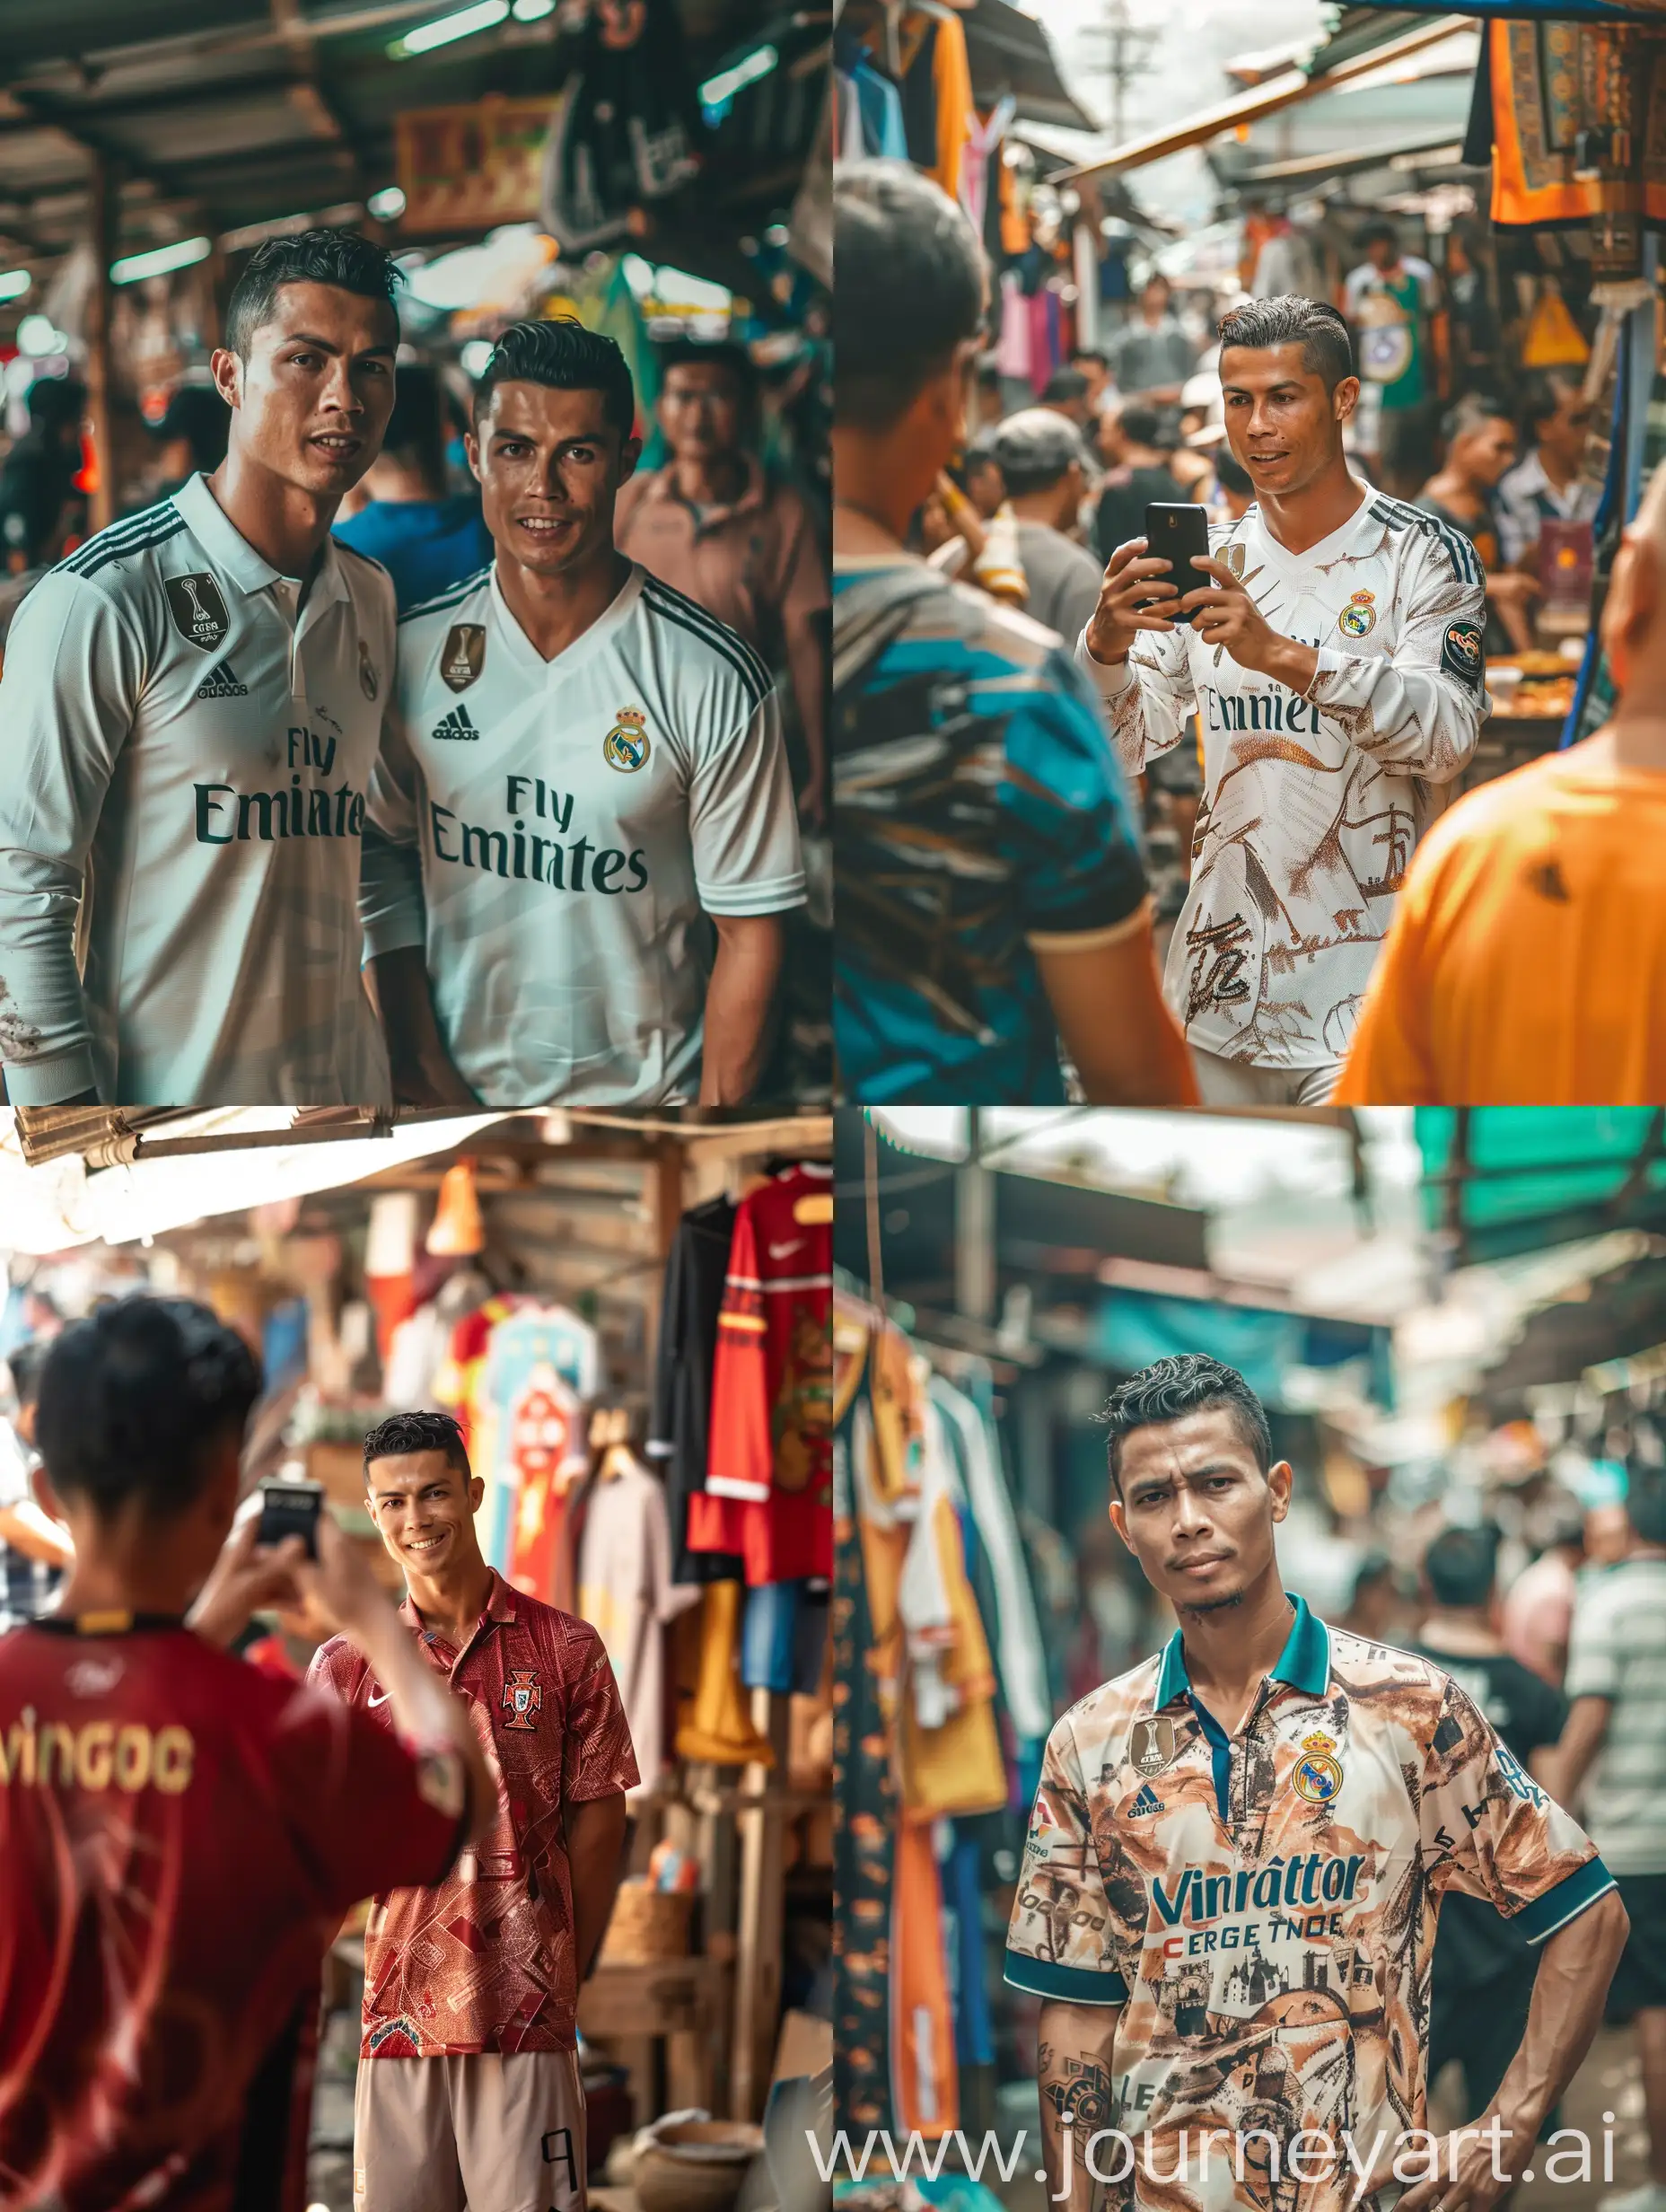 Potrait Seorang pria indonesia mengenakan baju bertulisan "Virgo Creative". Pria itu sedang berfoto bersama seorang Cristiano Ronaldo yang mengenakan jersey Al-Nasr.mereka berfoto di pasar tradisional. Kualitas 8K HD. foto asli.